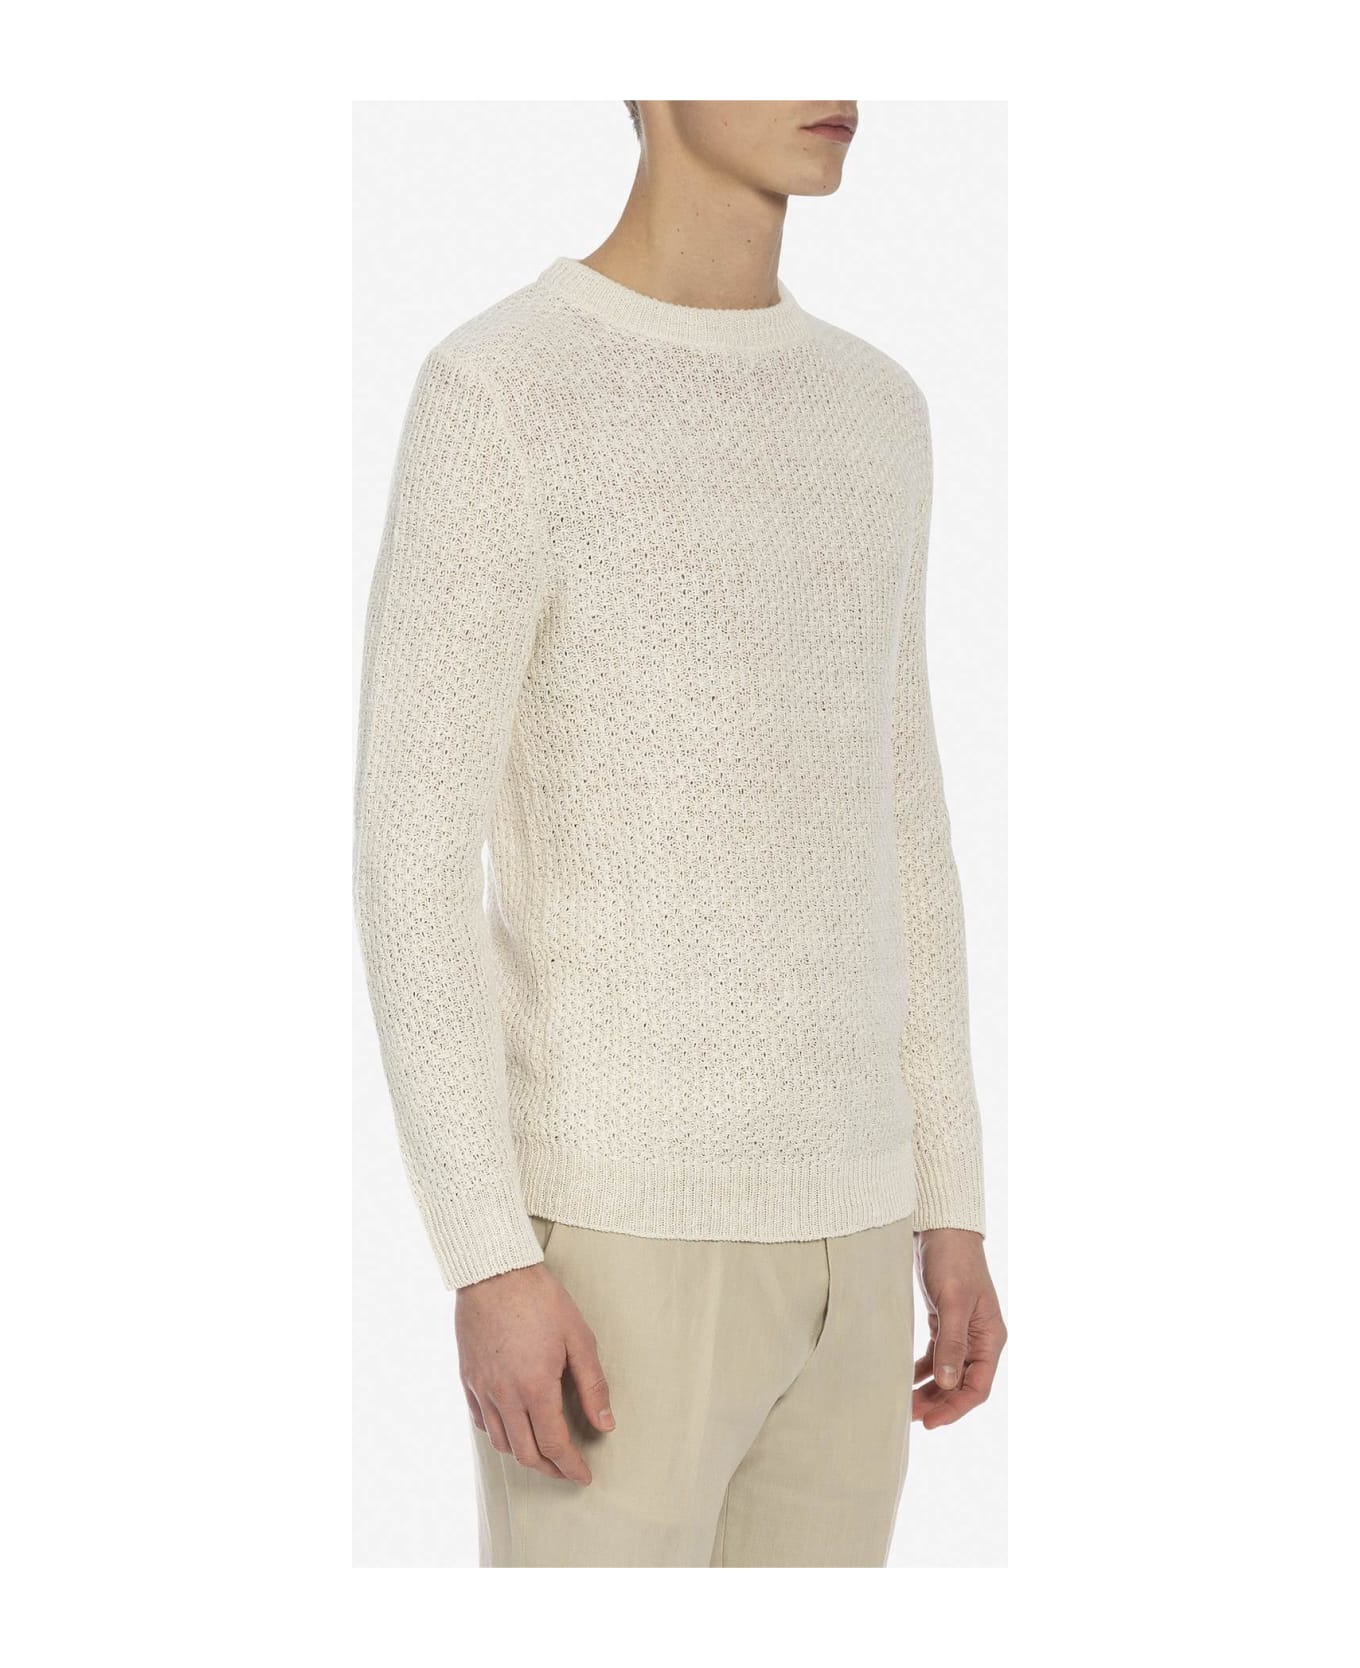 Larusmiani 'meadow Lane' Sweater Sweater - Ivory